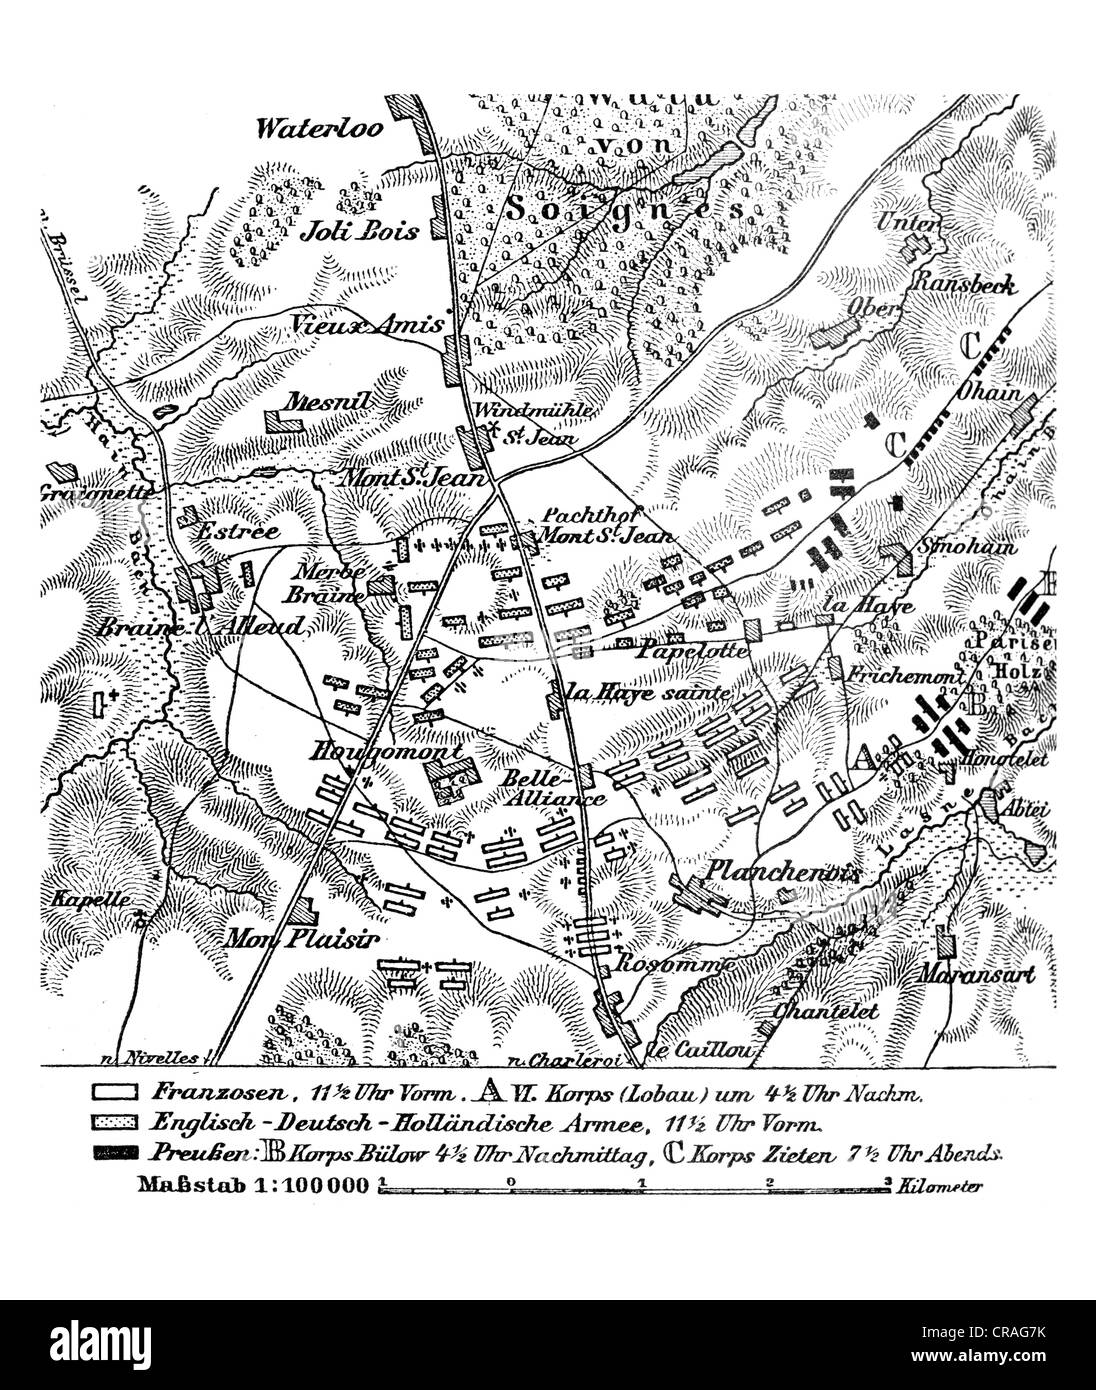 Karte der Schlacht von Waterloo, 18. Juni 1815, aus Meyers Konversationslexikon Enzyklopädie, 1897 Stockfoto